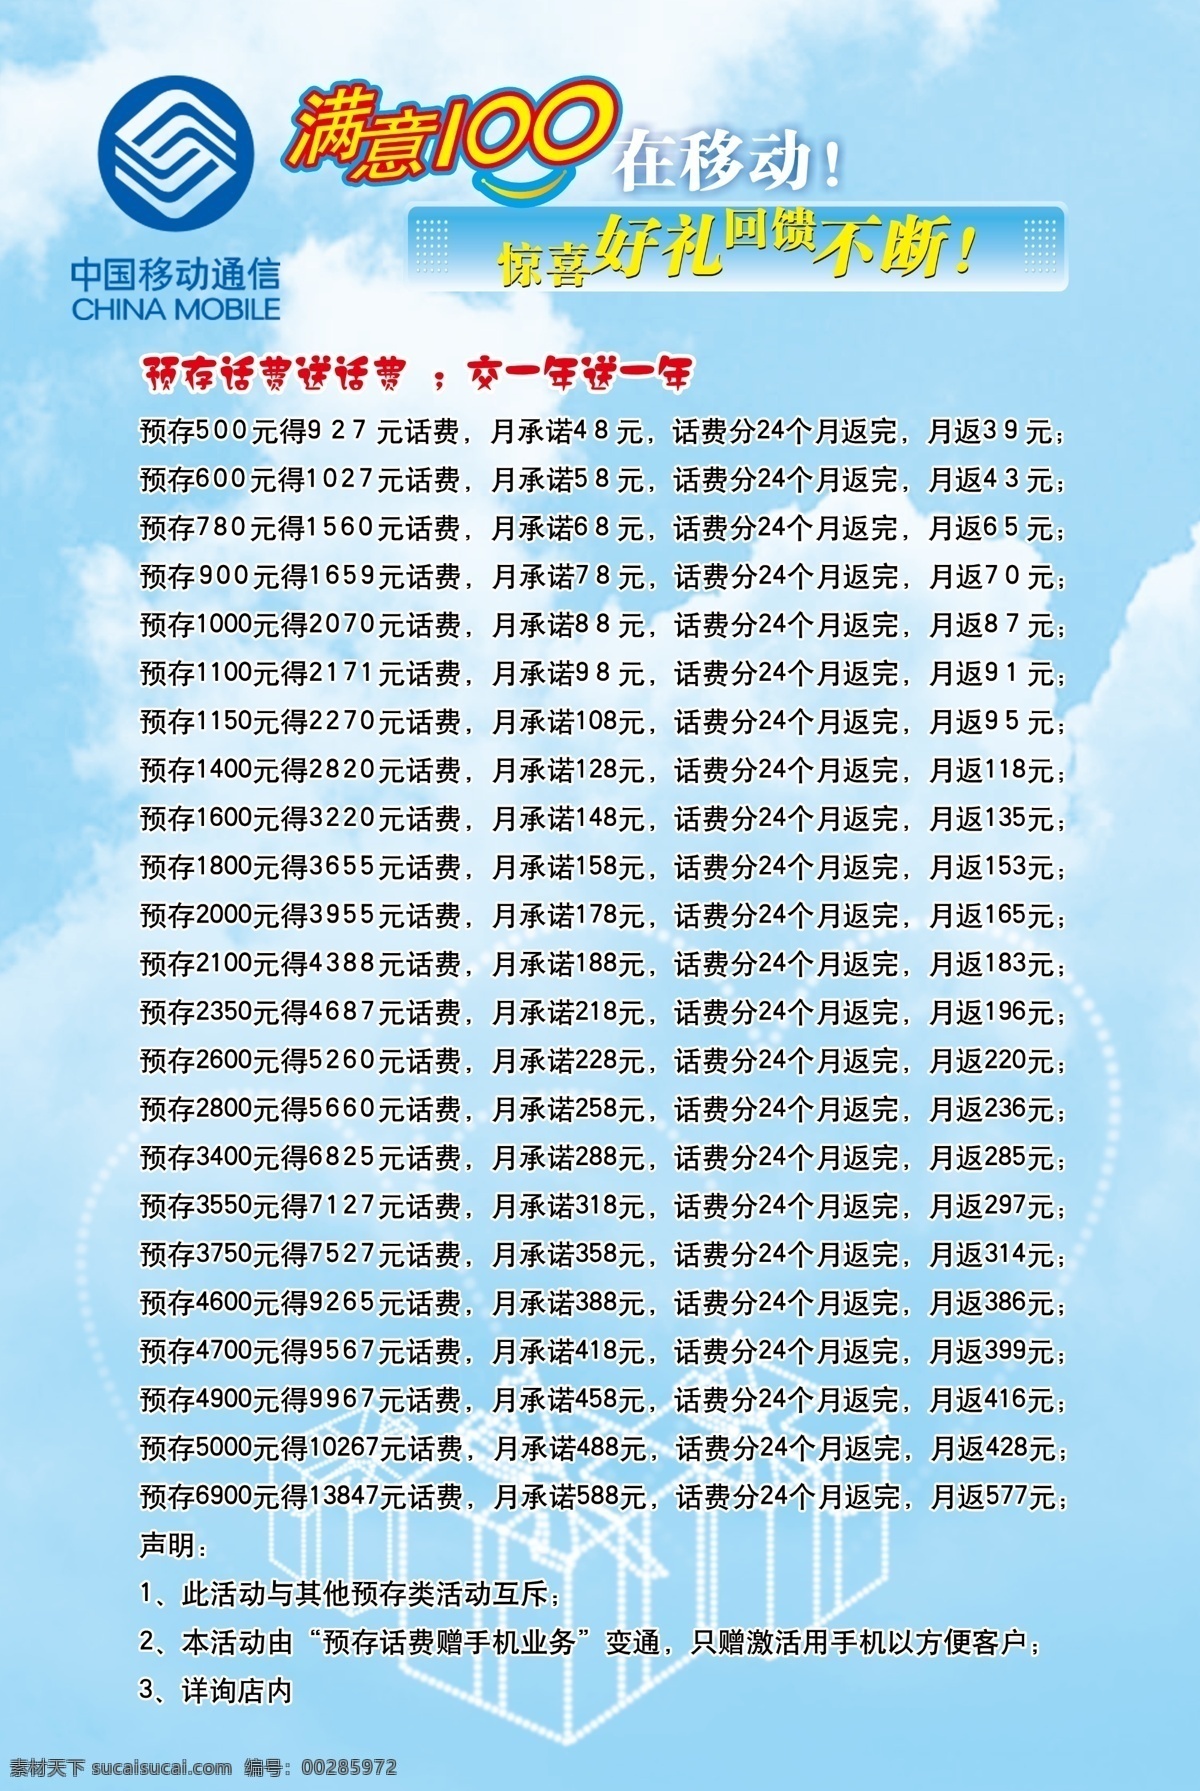 促销 广告设计模板 满意100 移动 源文件 展板模板 中国移动 模板下载 矢量图 现代科技